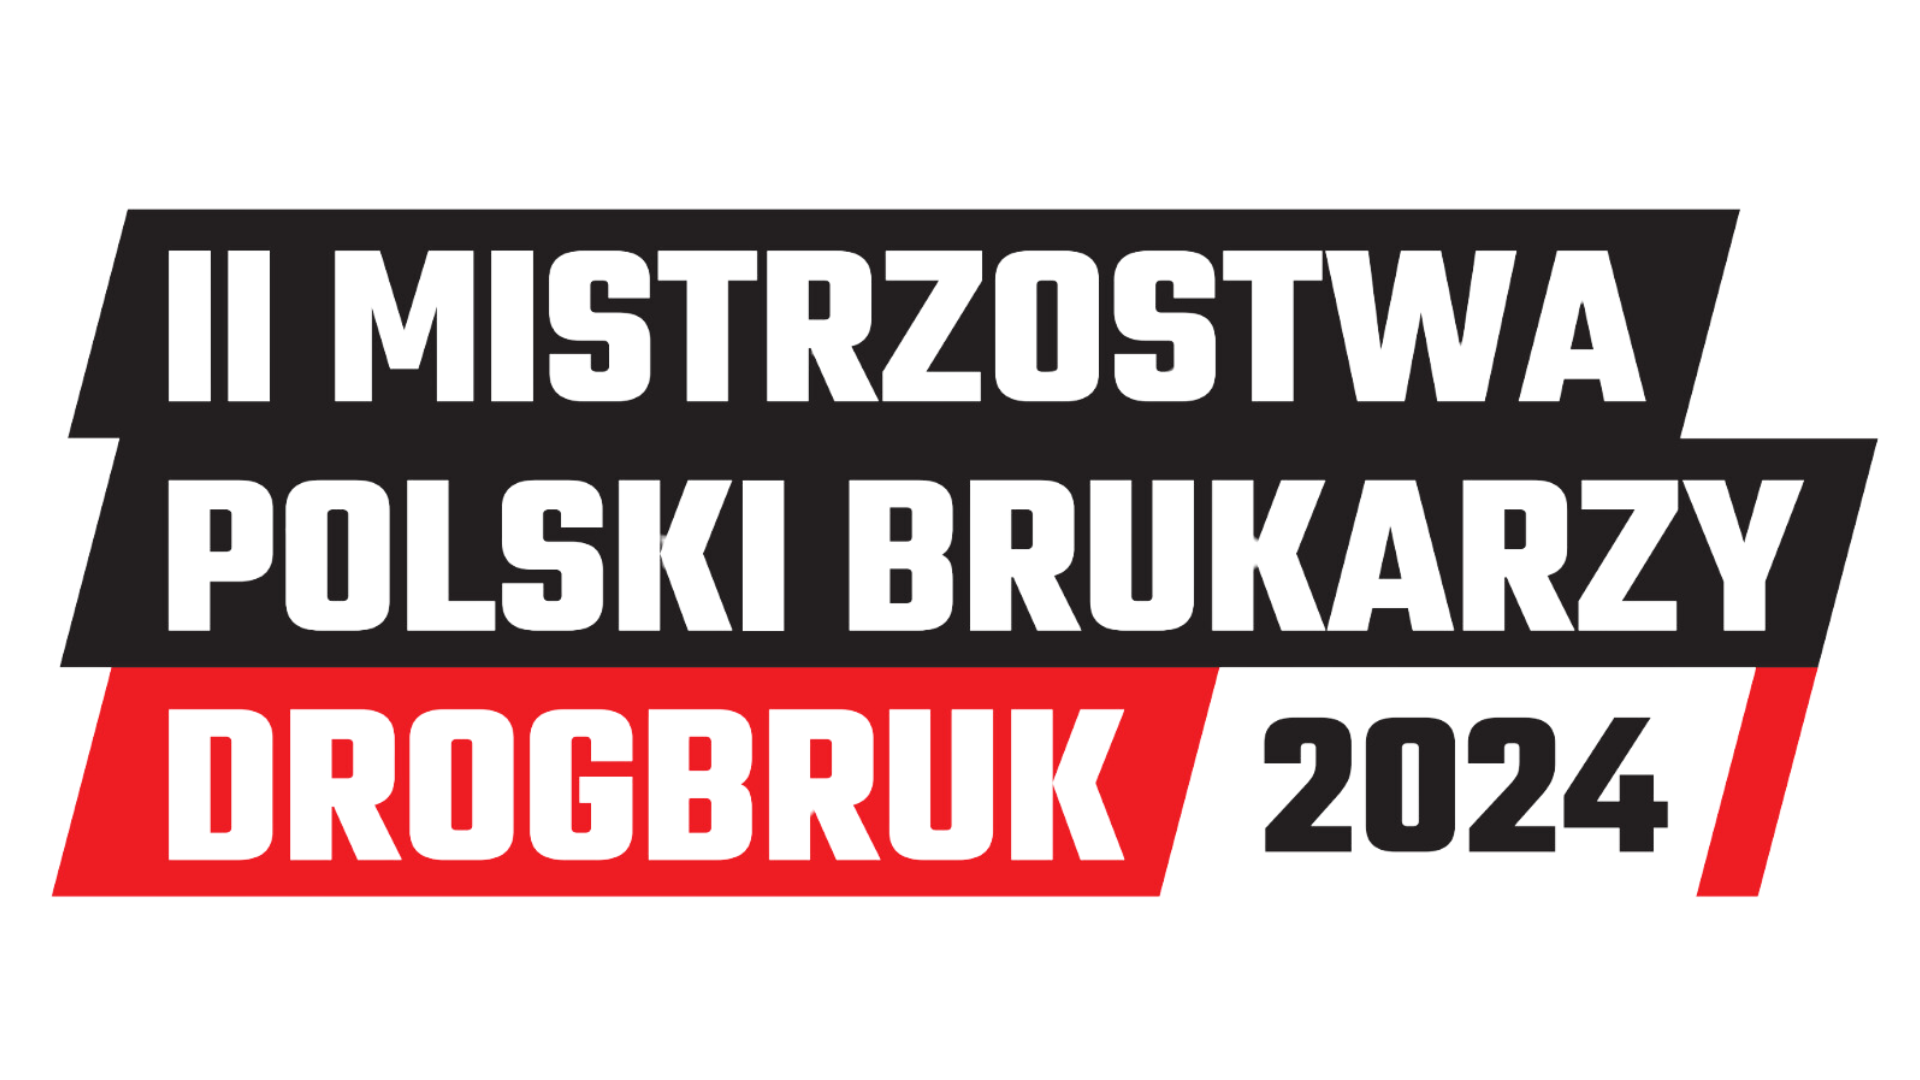 I Mistrzostwa Polski Brukarzy Drogbruk